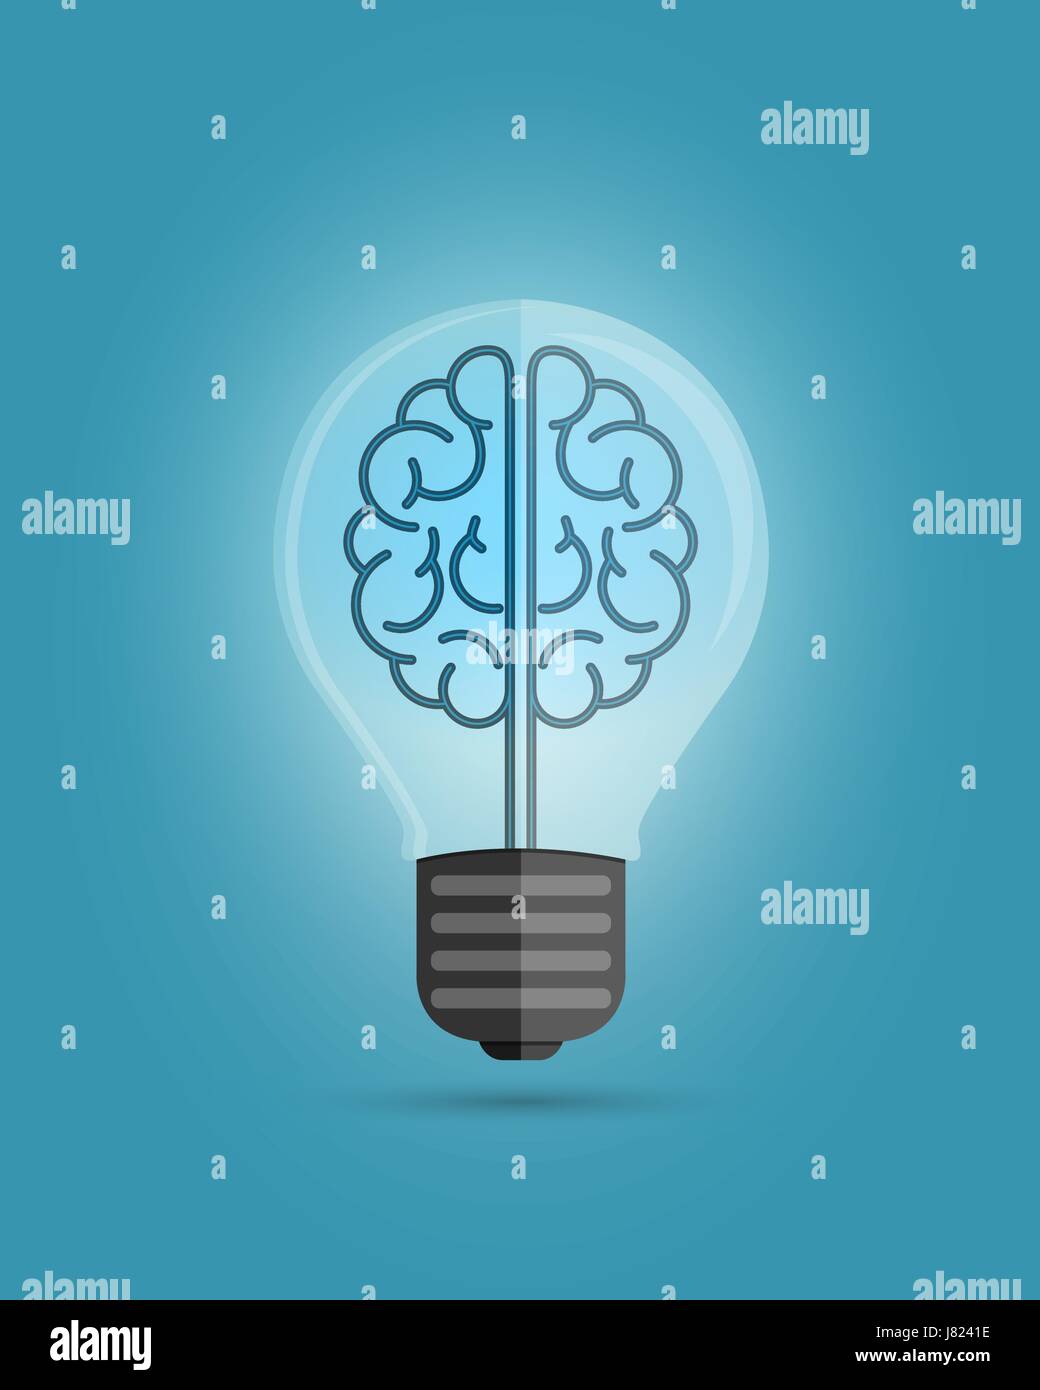 Glühbirne mit einem Gehirn, Ideen, kreatives Denken Konzept zu schaffen. Vektor-Illustration auf blauem Hintergrund. Stock Vektor